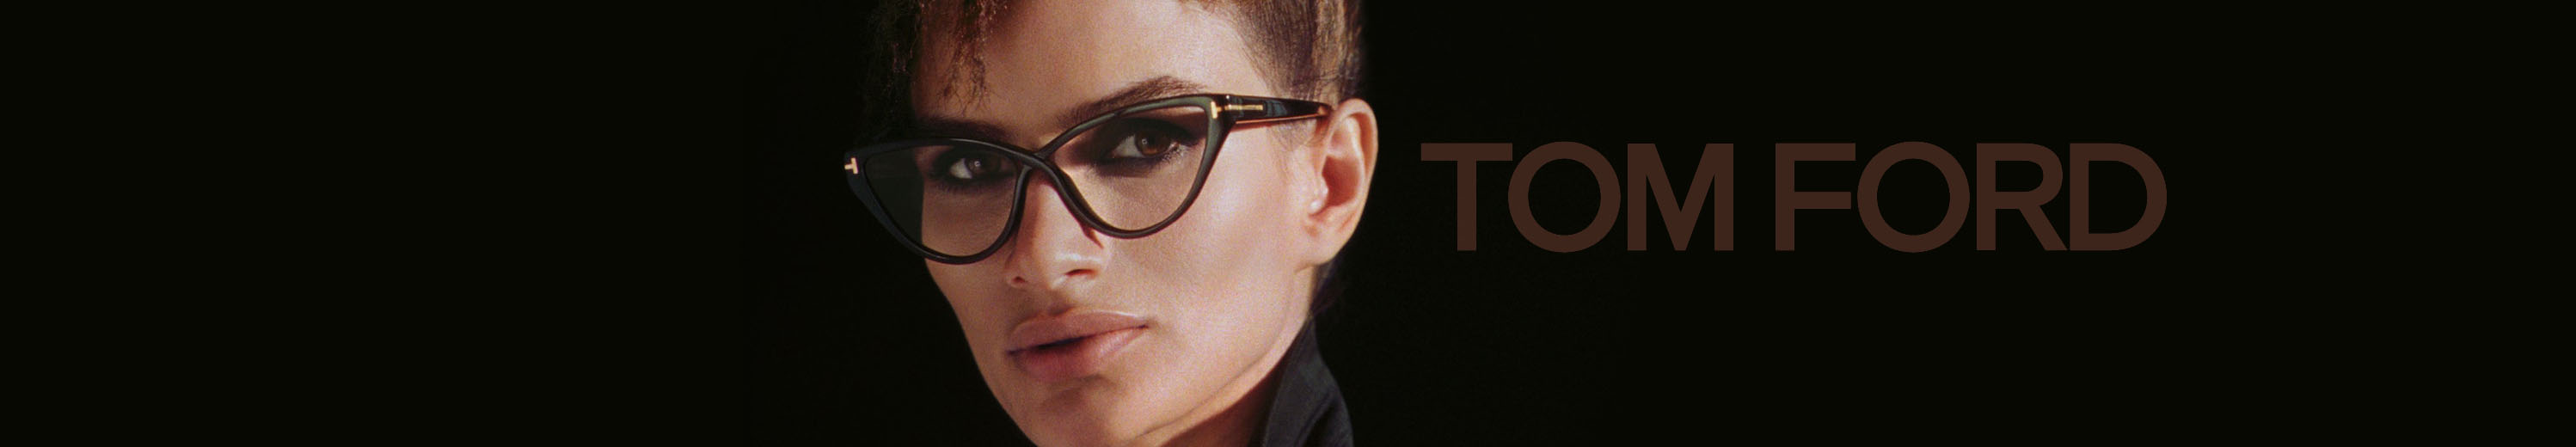 Tom Ford Eyeglasses for Women